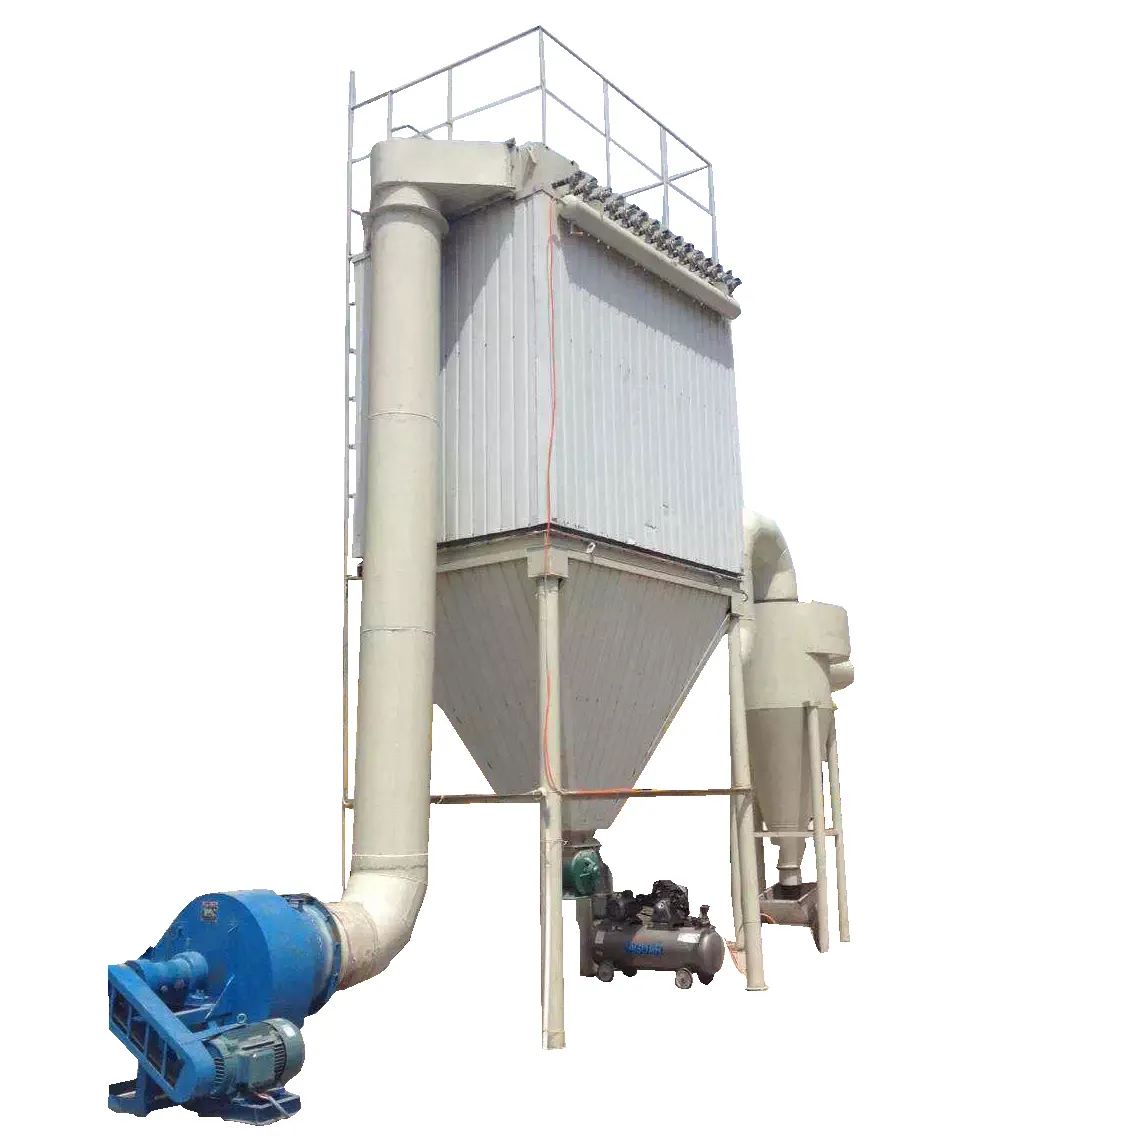 Toz toplayıcı konut endüstriyel talaş toplama veya kumaş Filbag filtre temizleme sistemleri